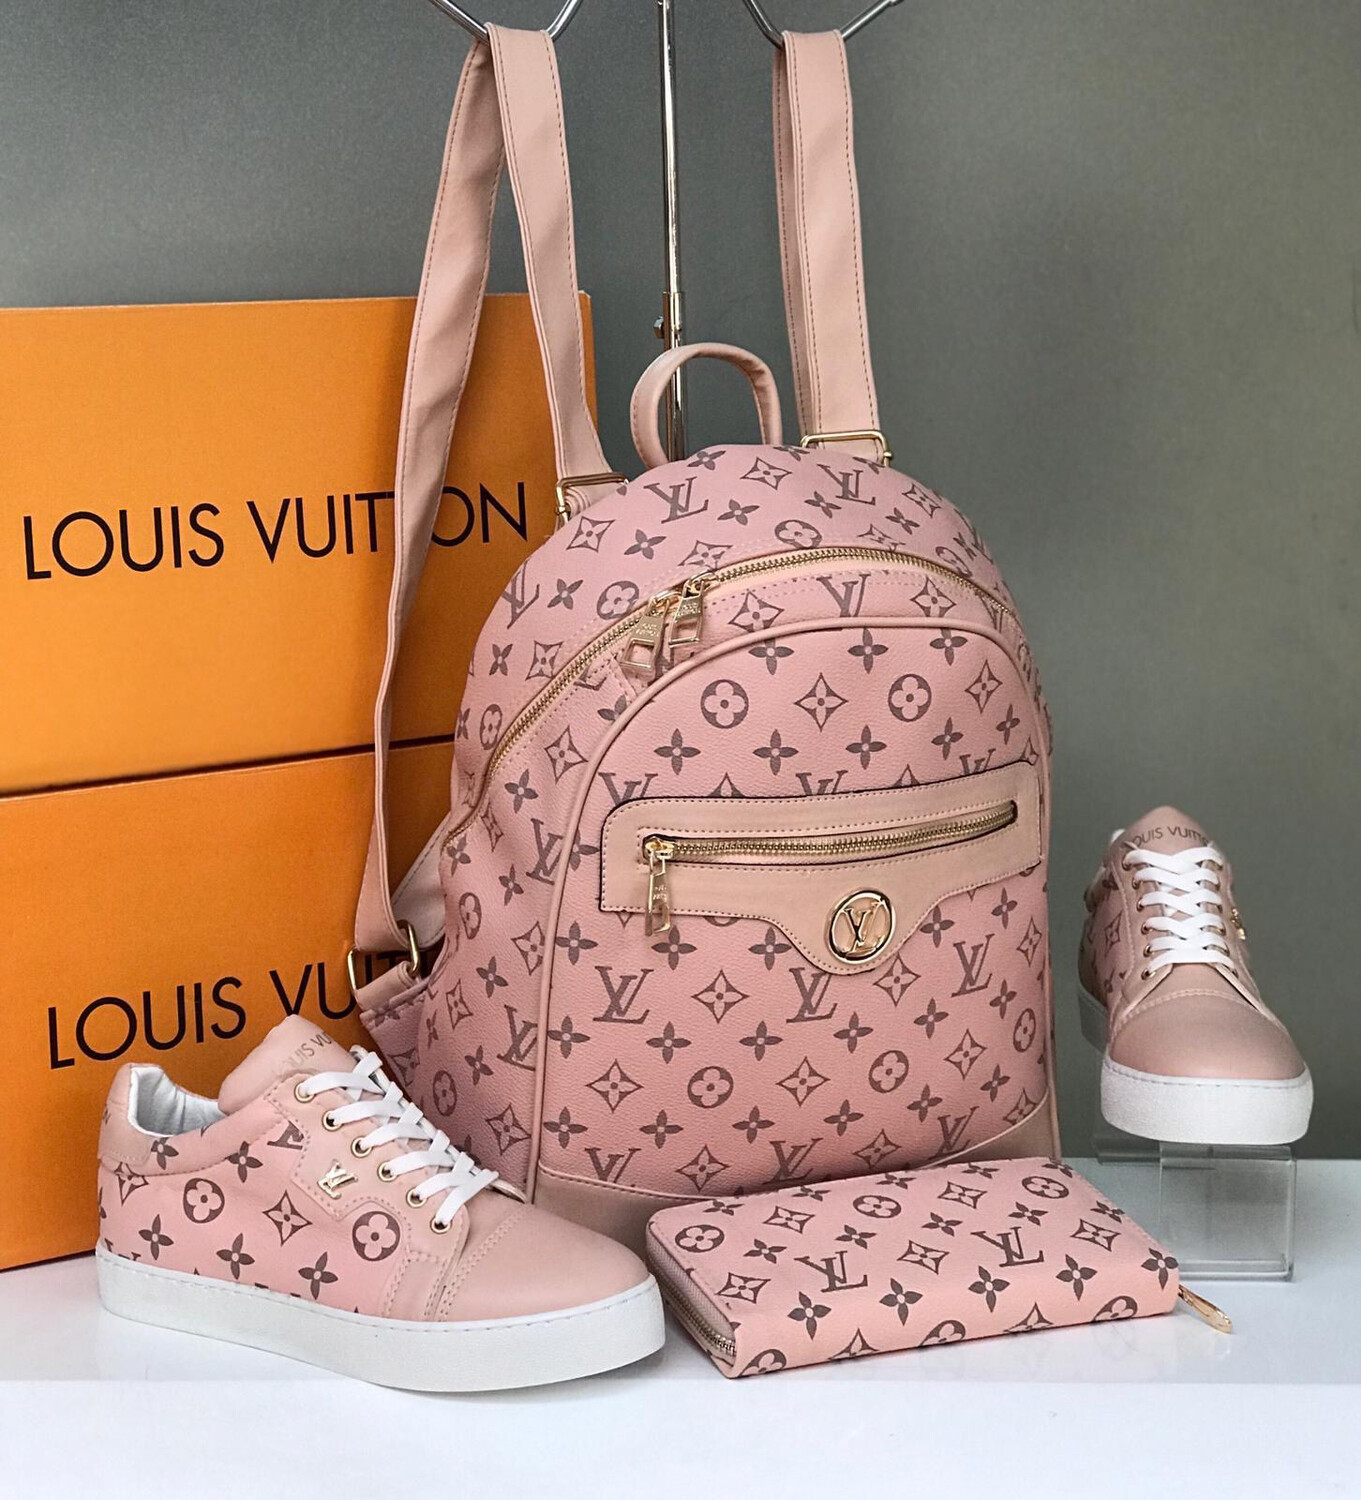 Louis Vuitton Set Sizes 7-8-9